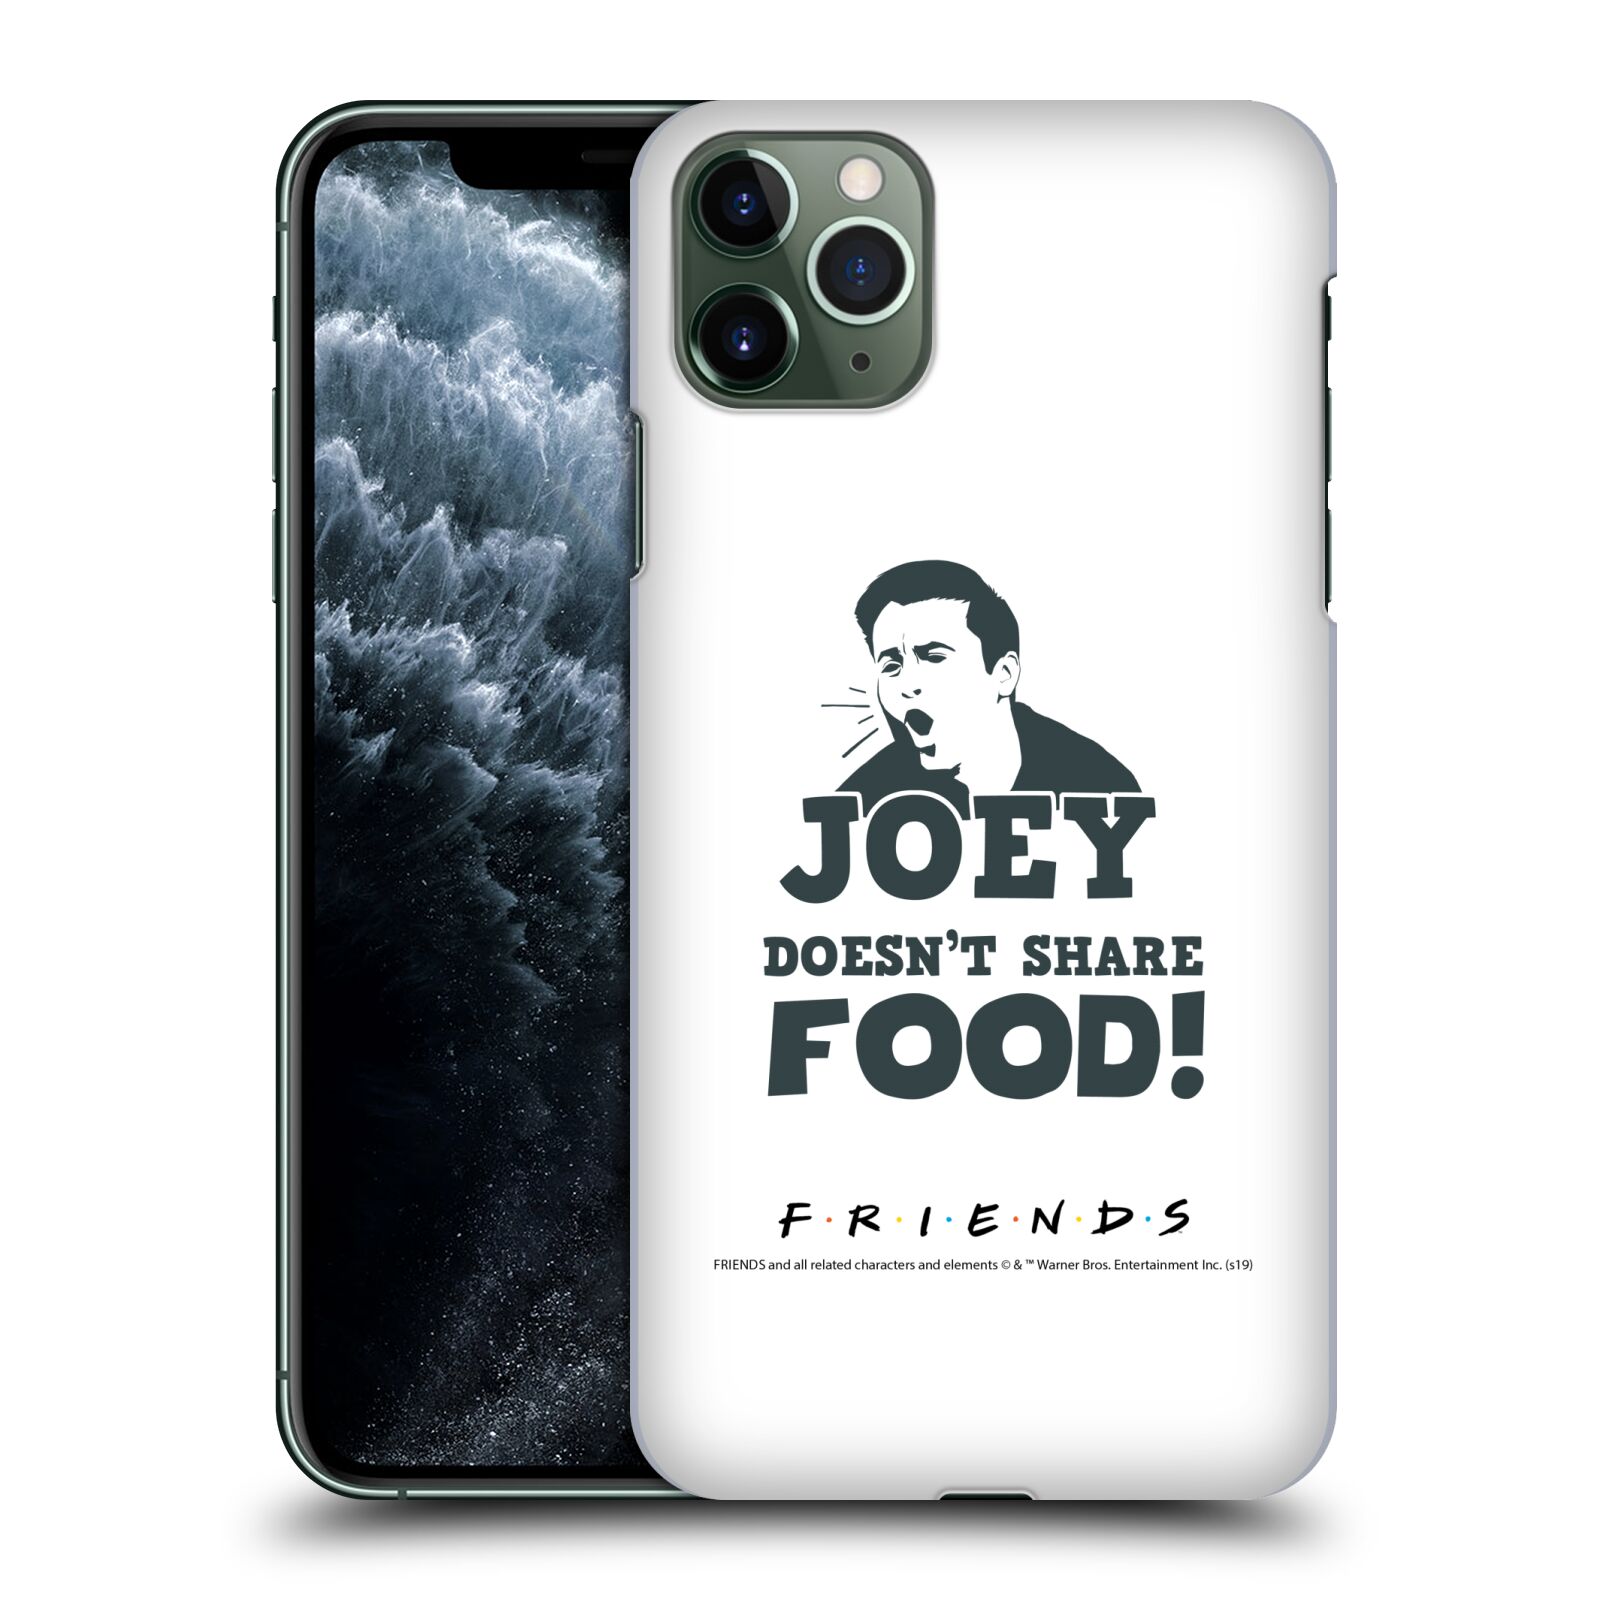 Pouzdro na mobil Apple Iphone 11 PRO MAX - HEAD CASE - Seriál Přátelé - Joey se o jídlo nedělí